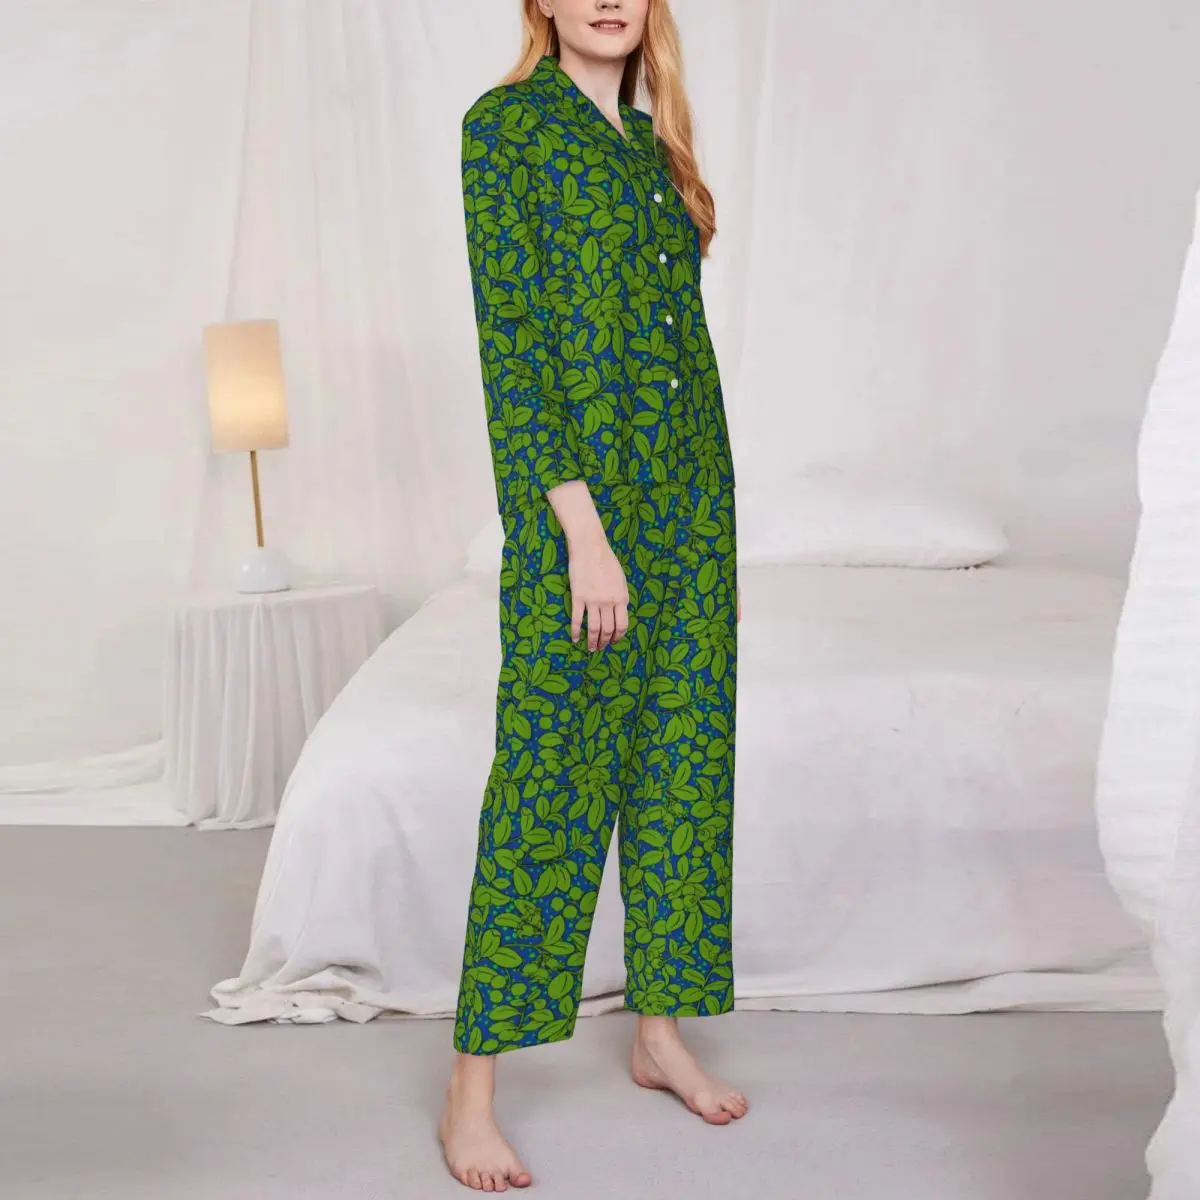 

Пижама женская в виде зеленых растений, романтическая повседневная одежда для сна с принтом листьев, свободный домашний костюм с графическим рисунком, 2 предмета, на осень